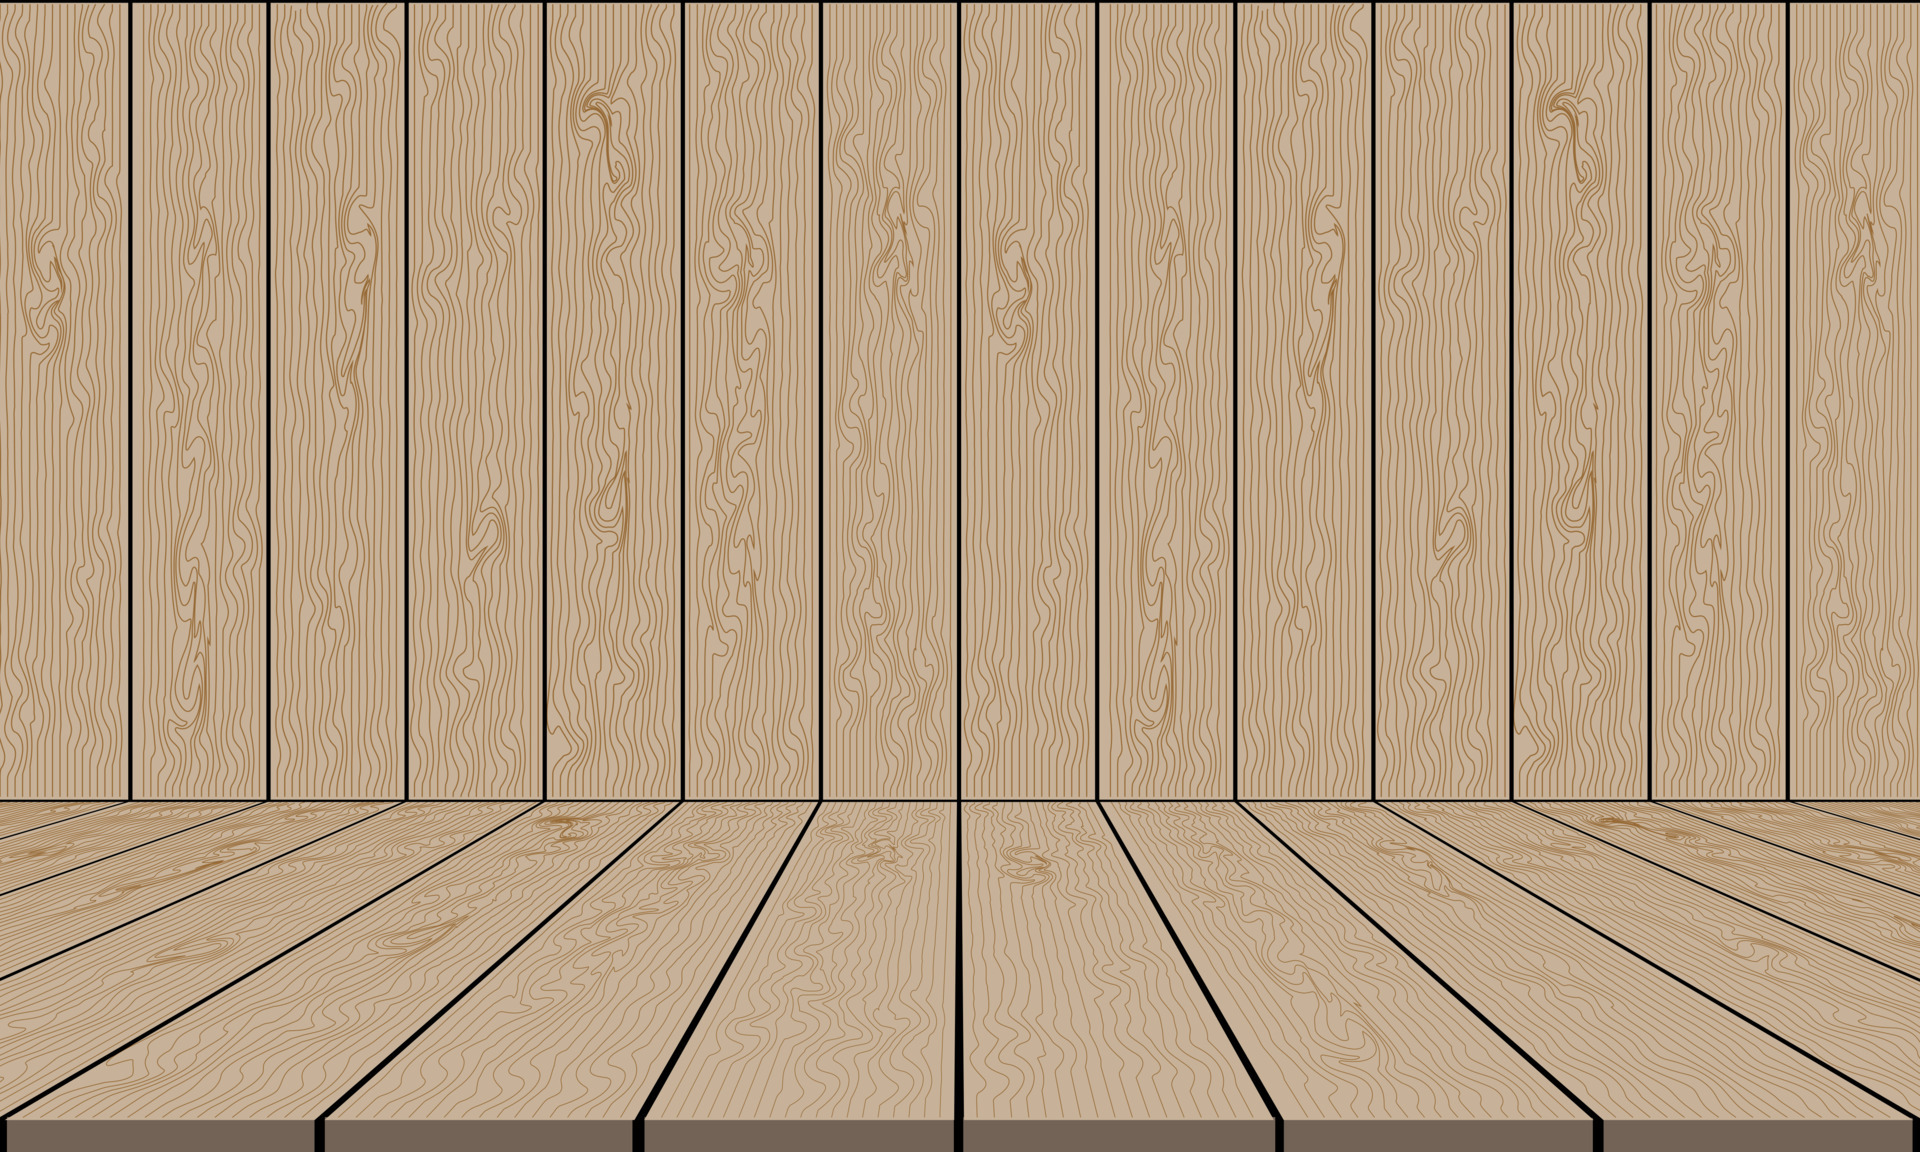 Nền tường sân khấu gỗ màu nâu trống và sàn tạo nên một không gian đơn giản và thanh lịch, phù hợp với nhiều loại trình diễn. Với phong cách gỗ cổ điển, bạn có thể sáng tạo một không gian biểu diễn tuyệt vời cho các nghệ sĩ. Hãy xem ảnh để tìm hiểu thêm về nền tường sân khấu gỗ màu nâu trống và sàn.